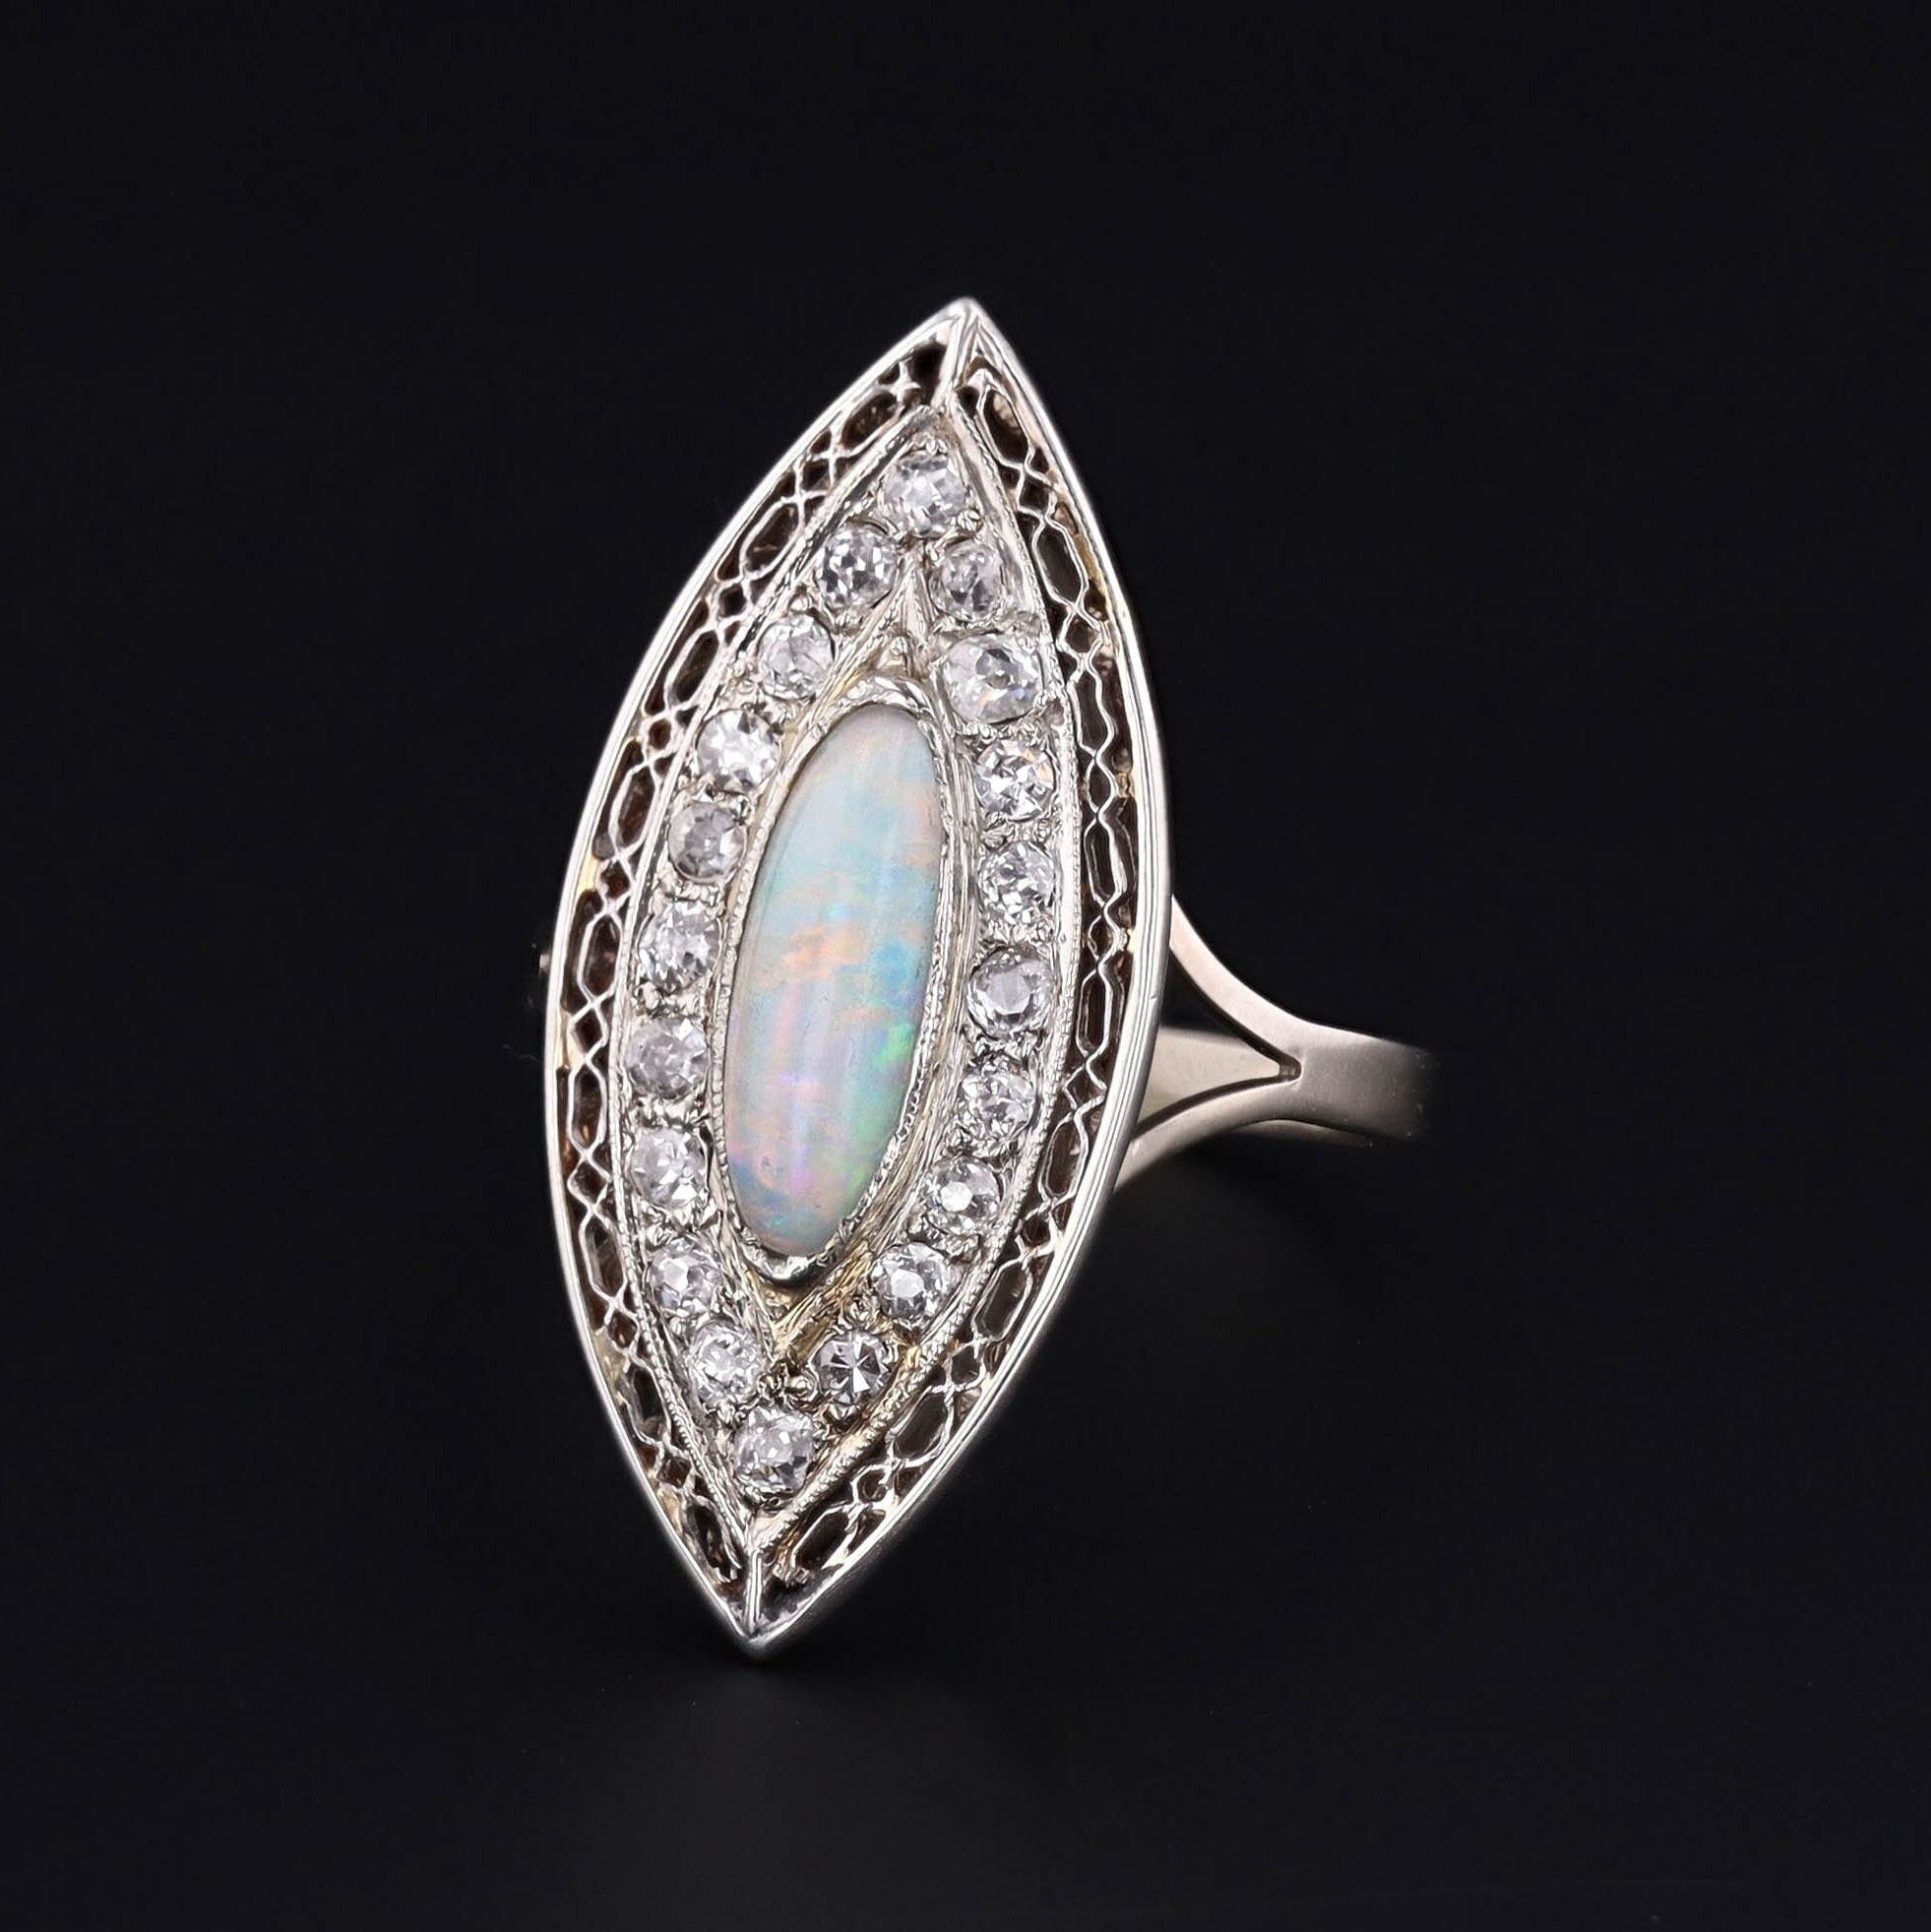 Antique Opal Ring | Navettte Ring 